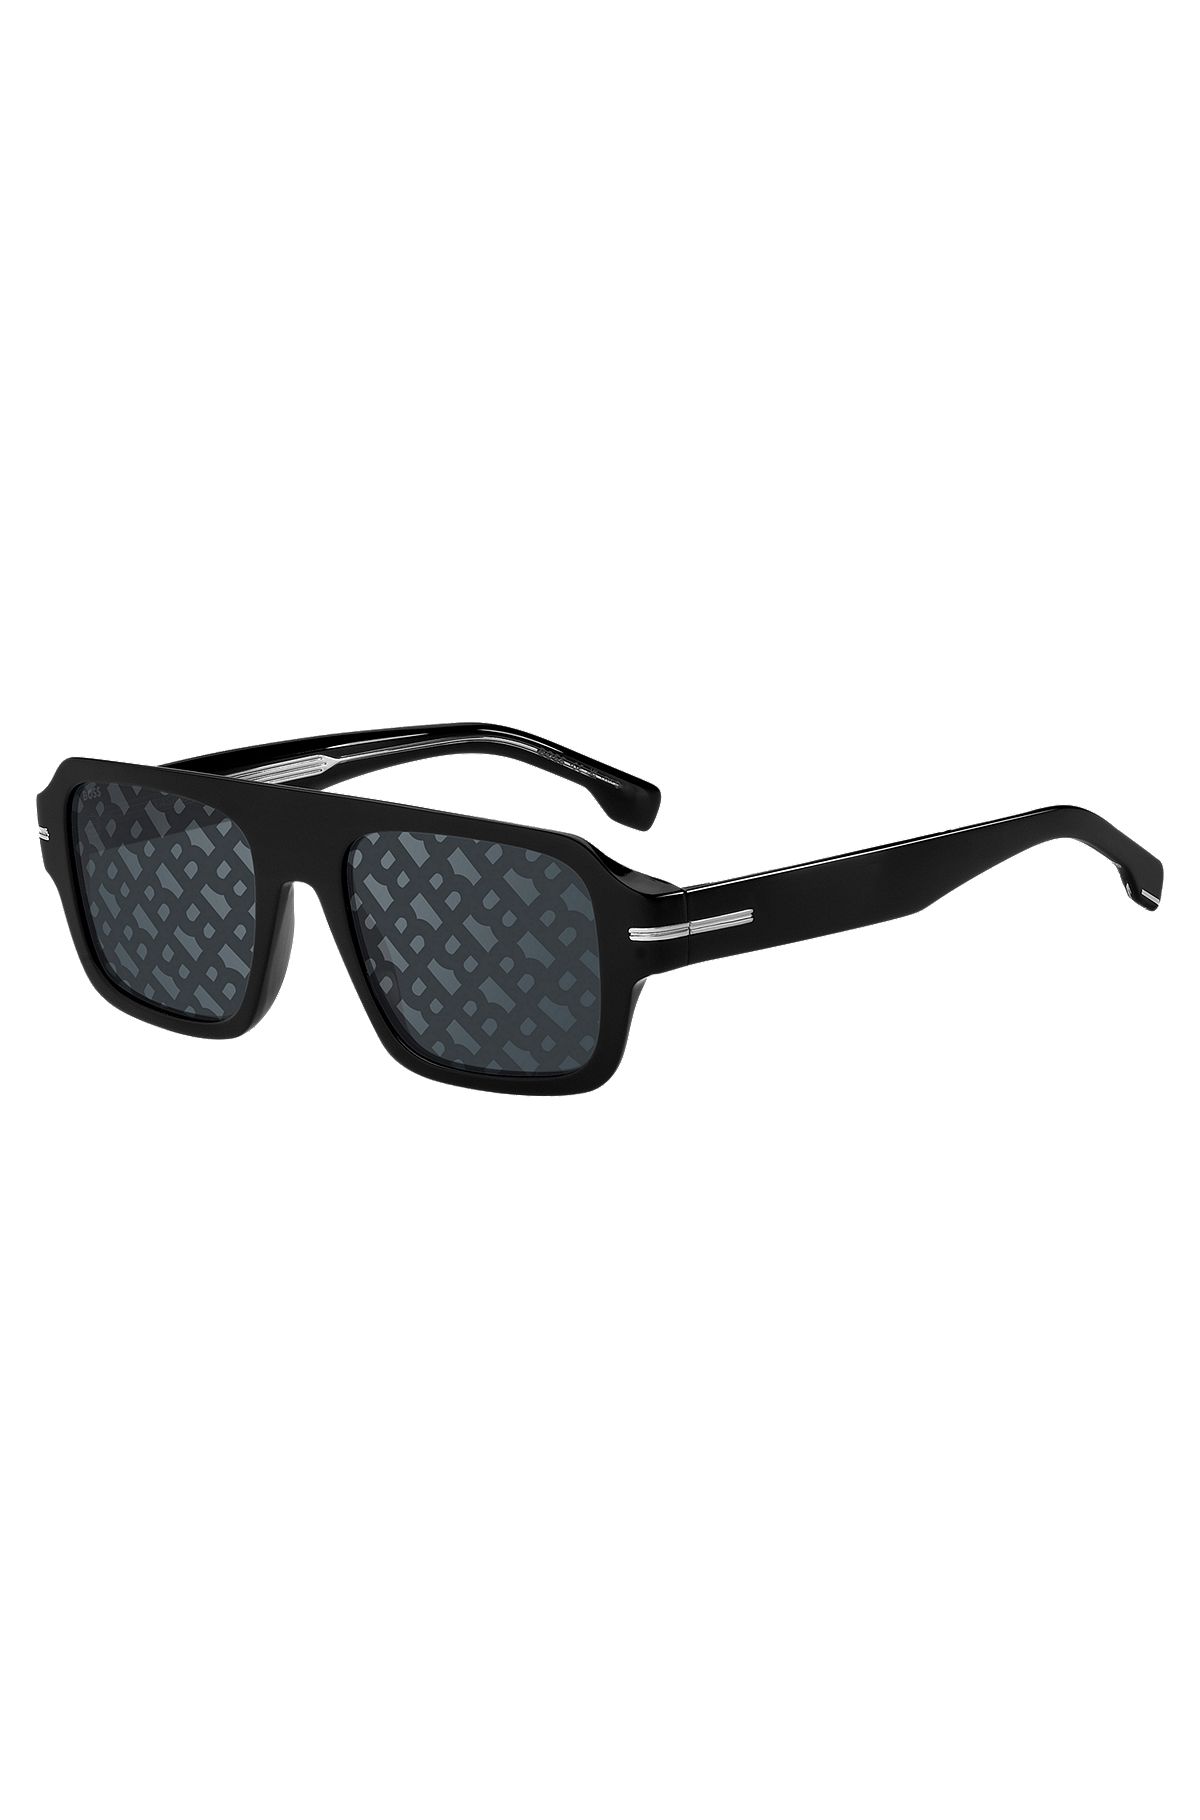 Schwarze Sonnenbrille aus Acetat mit Monogramm-Muster auf den Gläsern, Schwarz